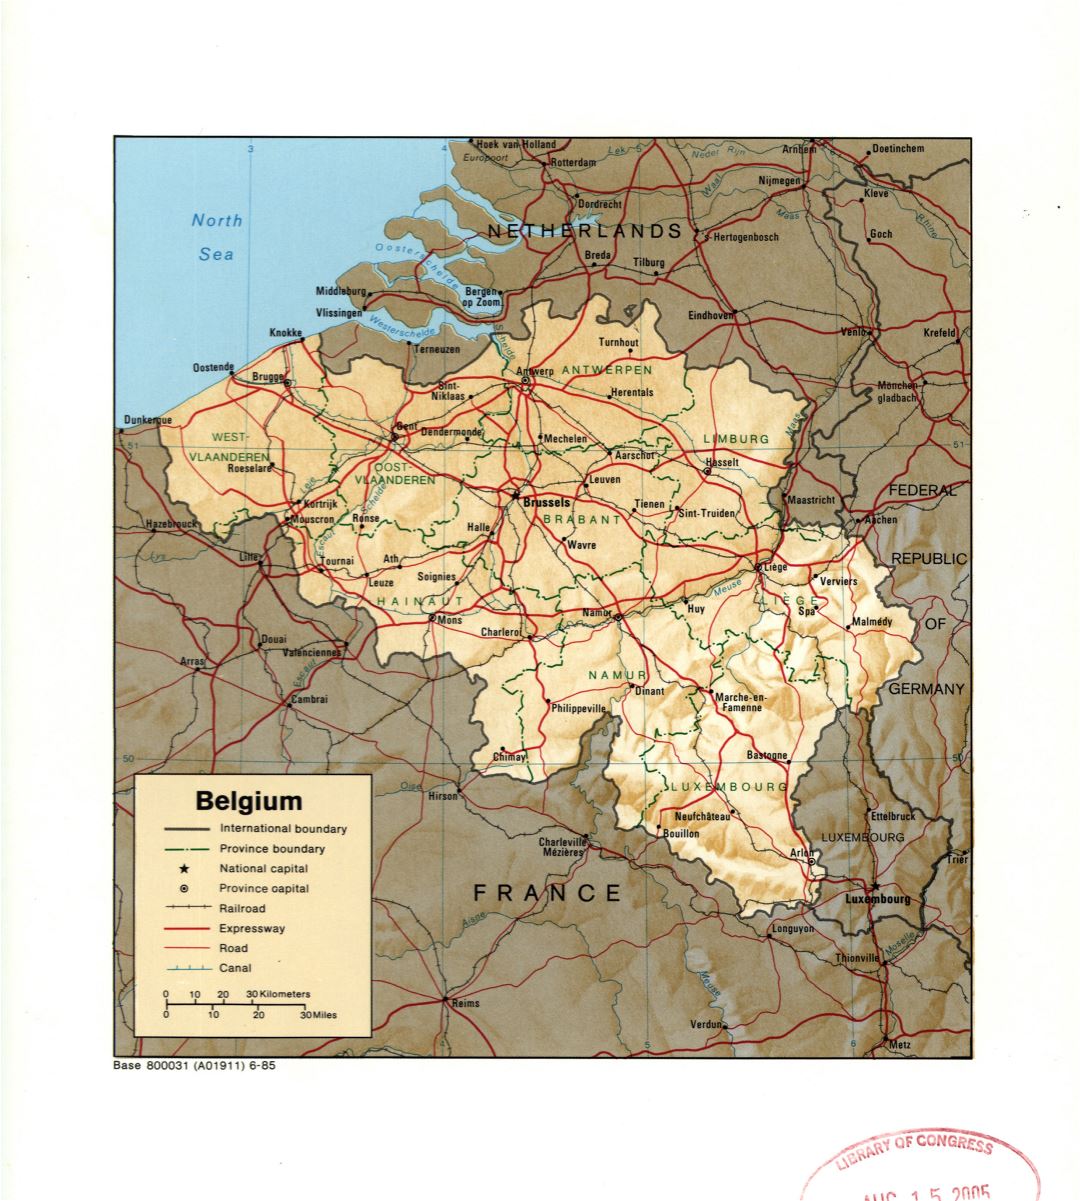 Gran detalle mapa político y administrativo de Bélgica con relieve, marcas de ciudades grandes, carreteras, ferrocarriles y canales - 1985